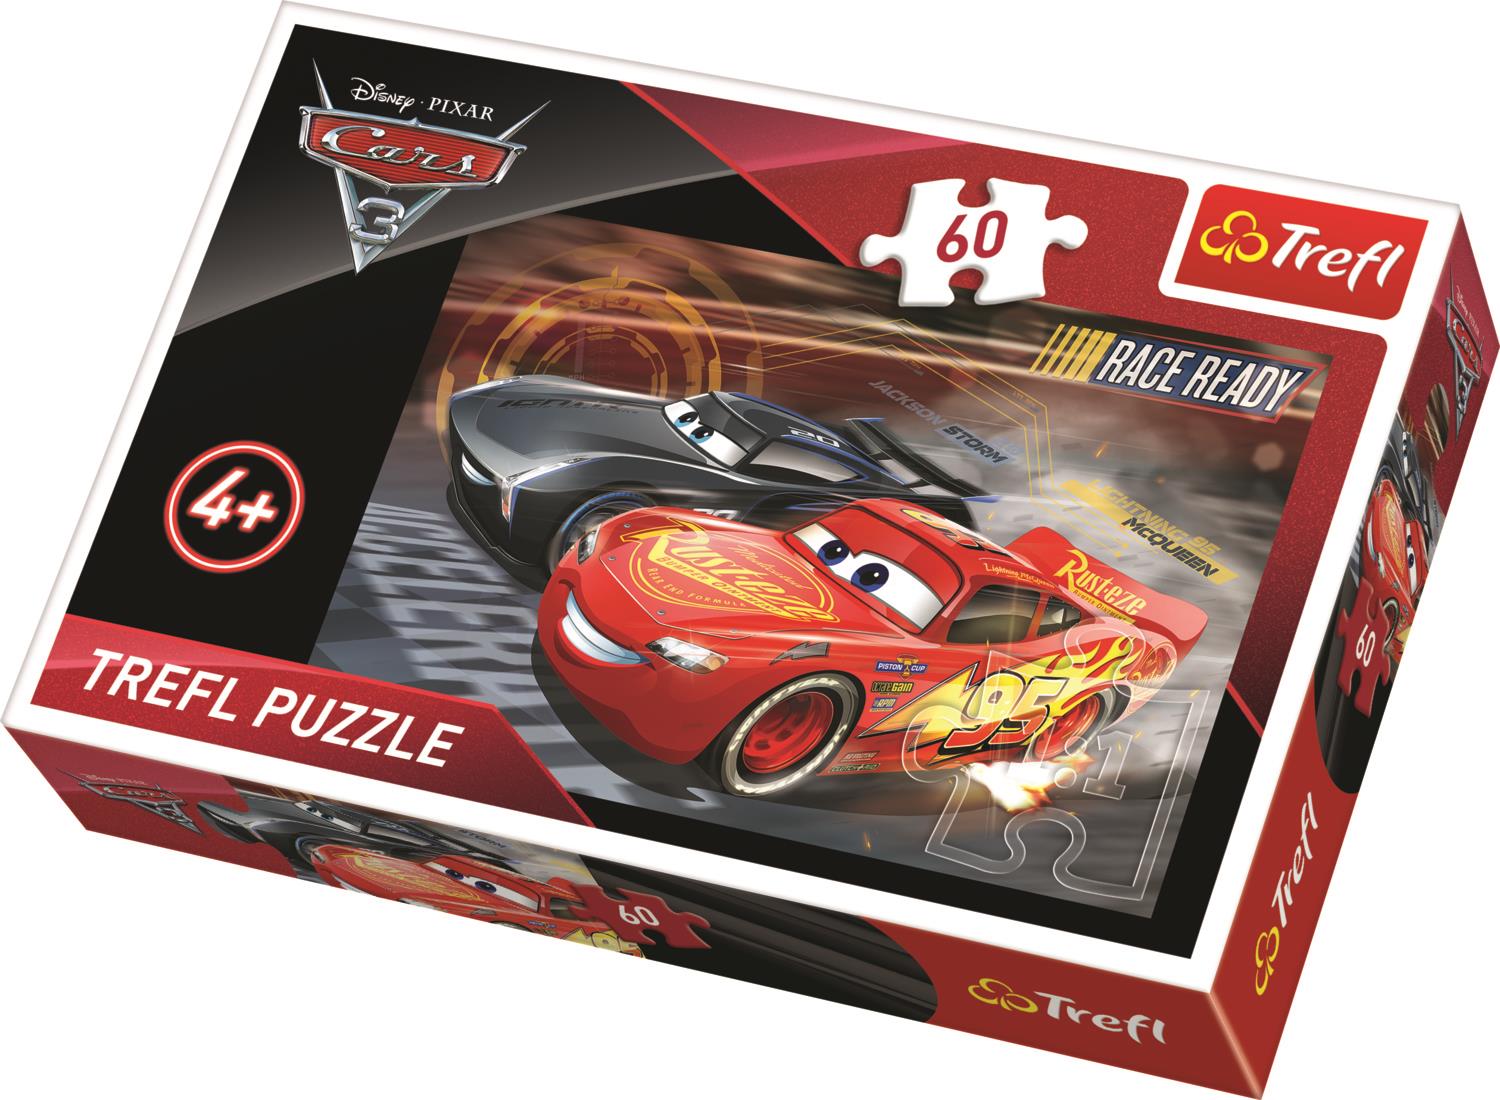 Trefl Çocuk Puzzle 17297 Cars 3 Race, Disney 60 Parça Puzzle